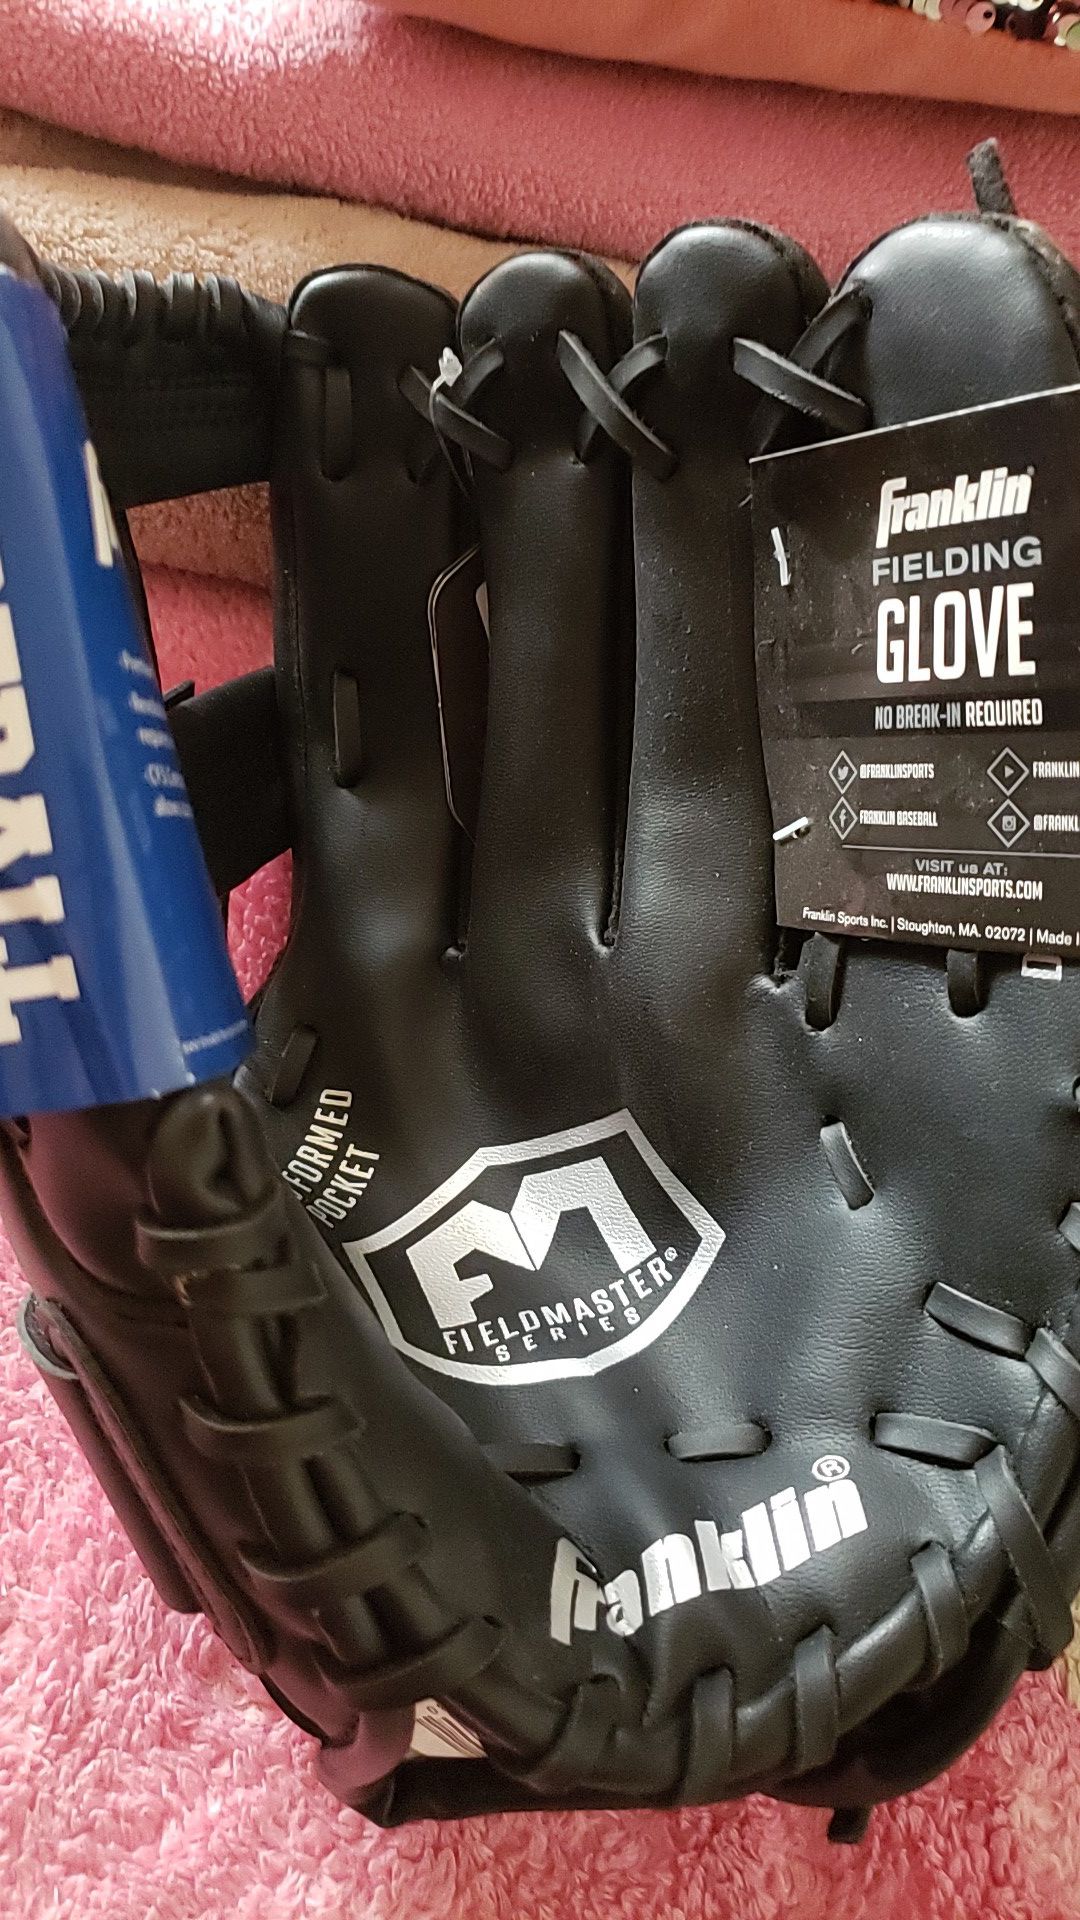 Baseball glove new